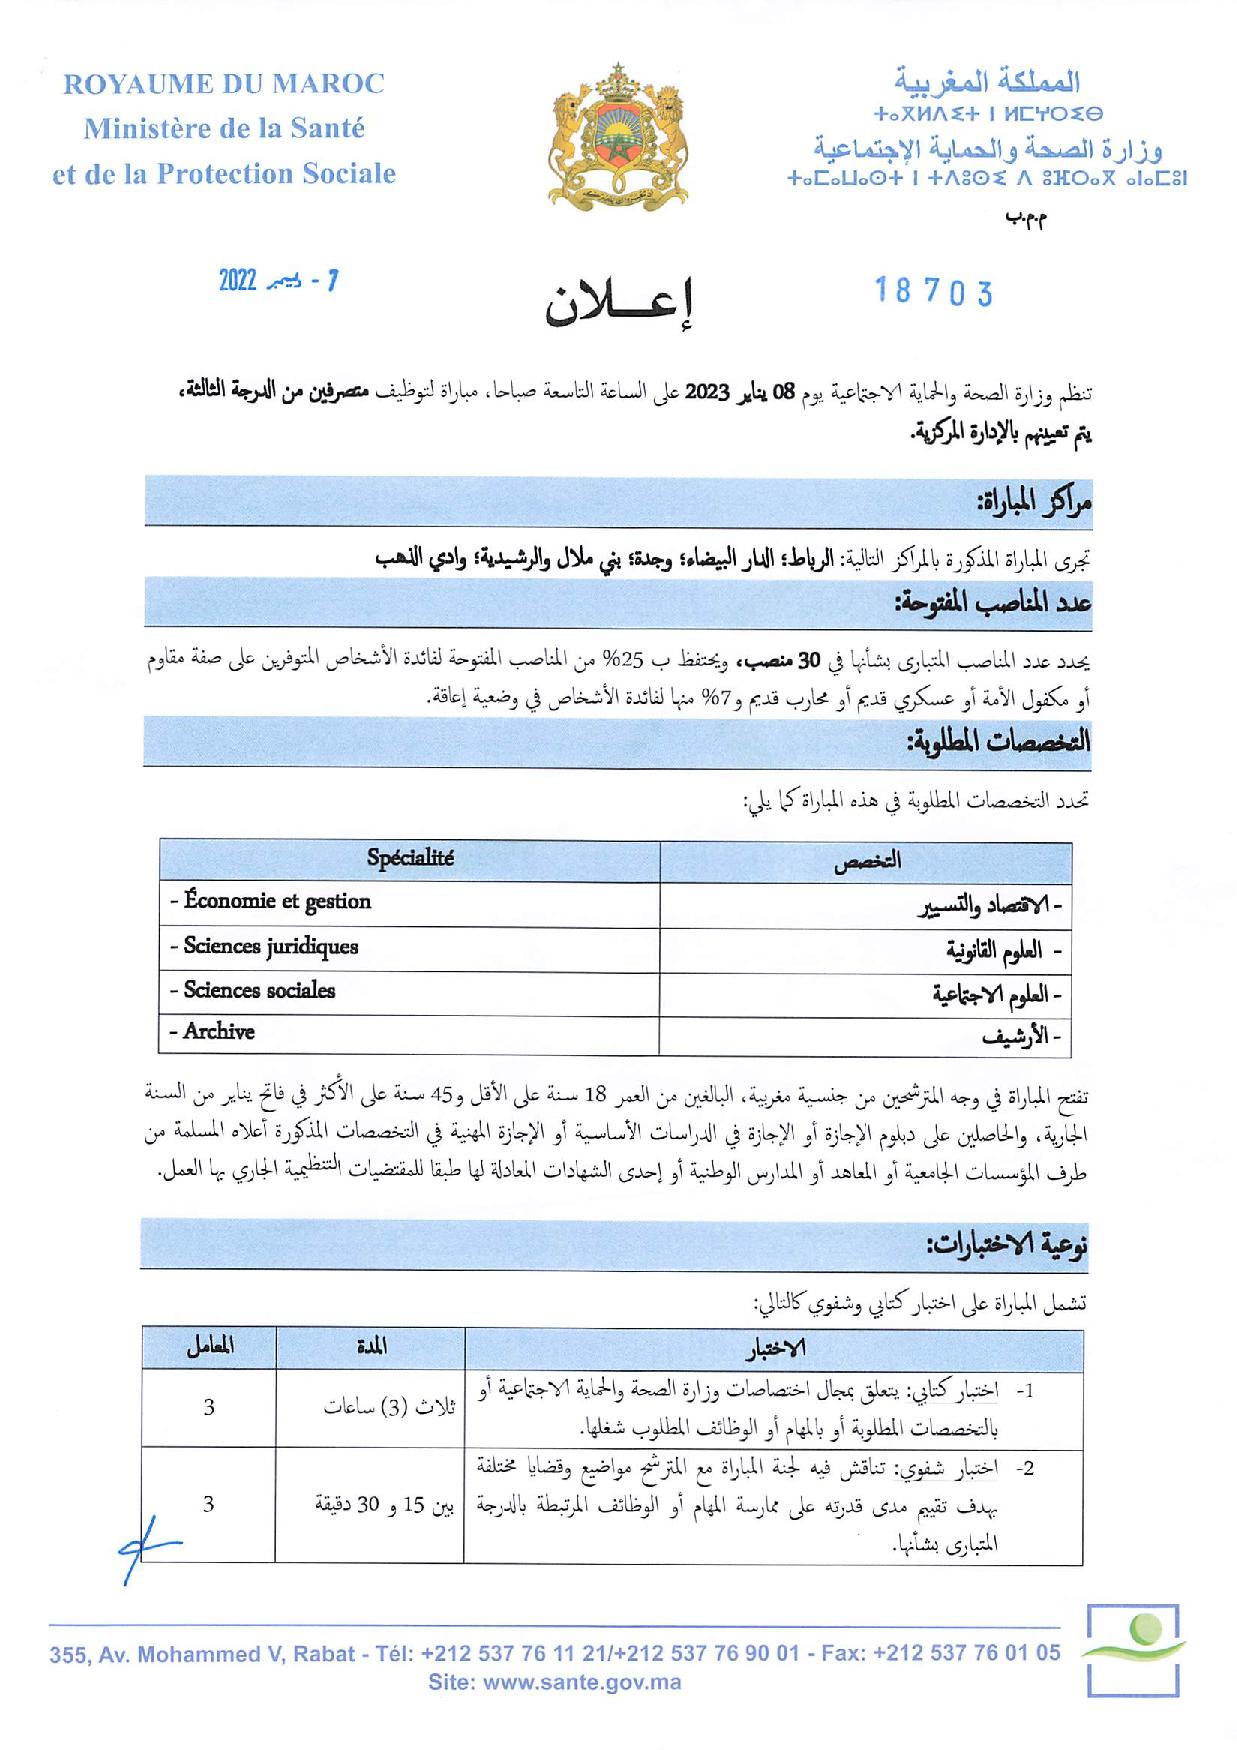 Concours de recrutement Ministère de la Santé 2022